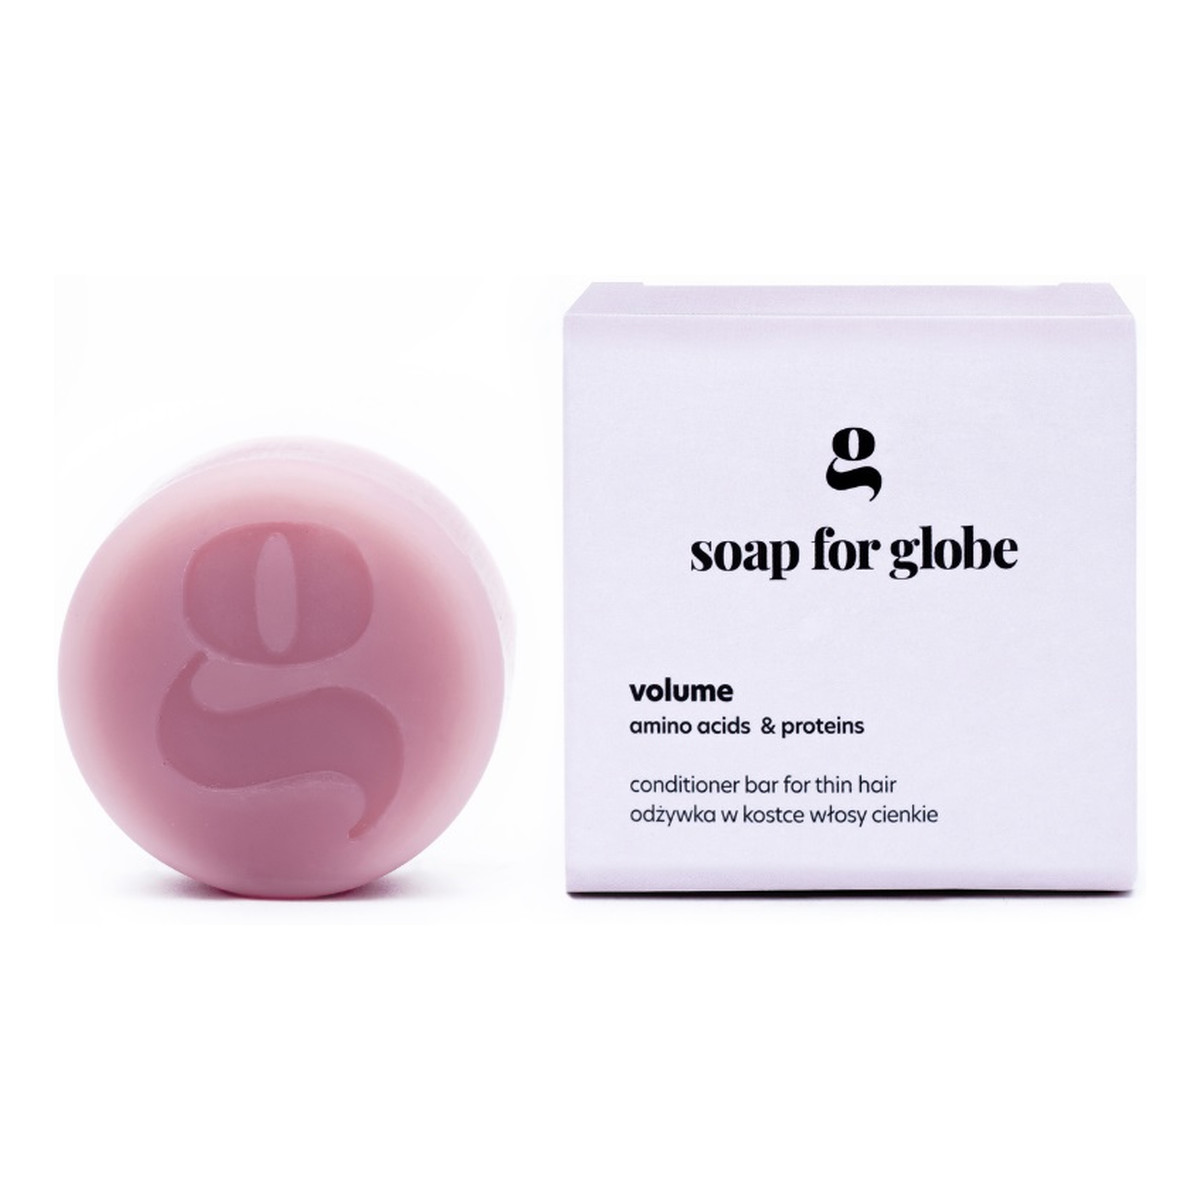 Soap for Globe Odżywka dla włosów cienkich volume 50g 50g